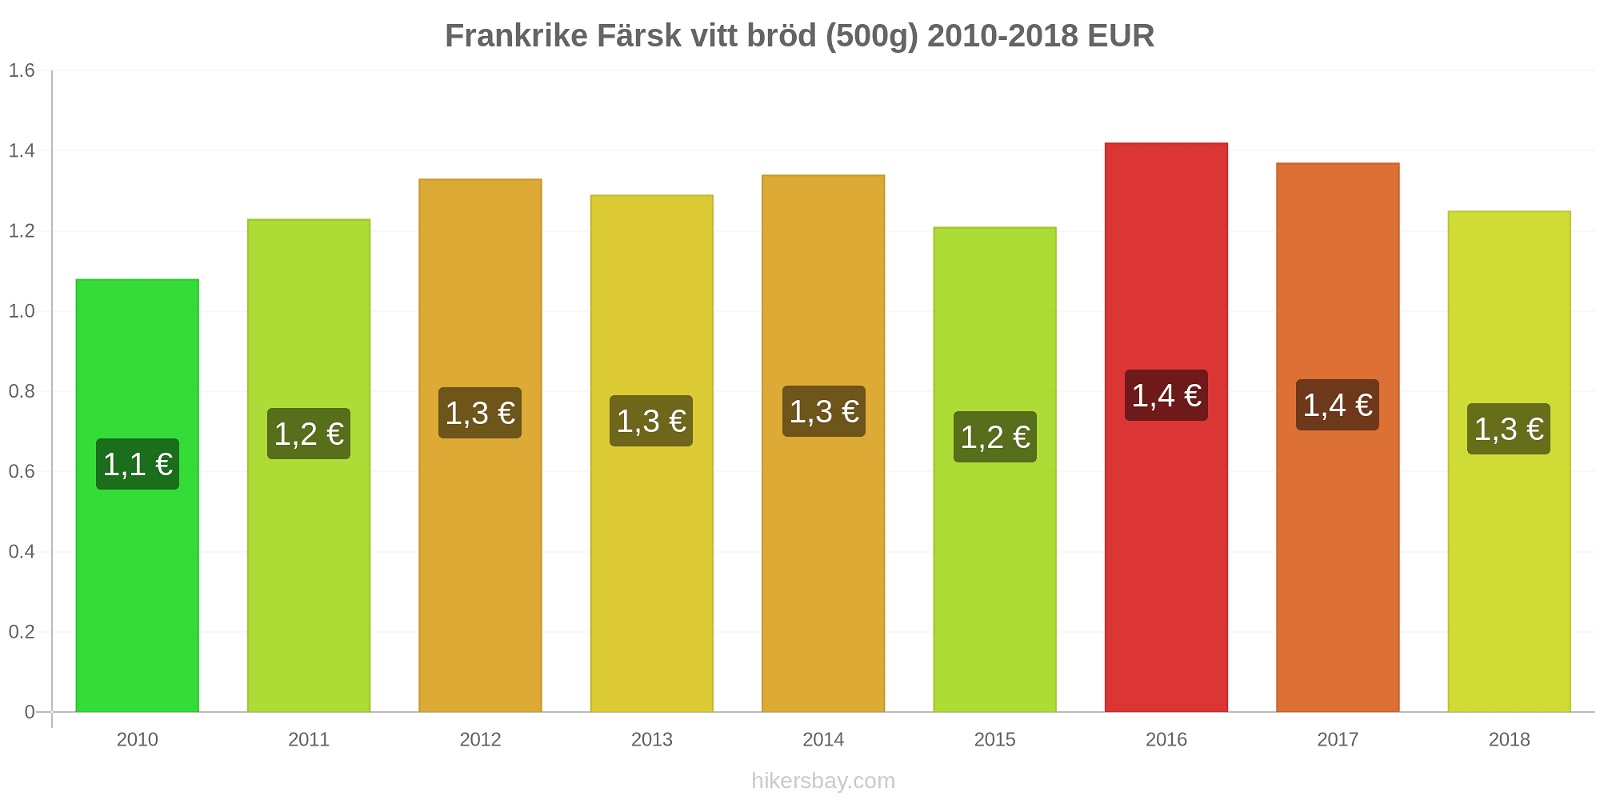 Frankrike prisändringar Färsk vitt bröd (500g) hikersbay.com